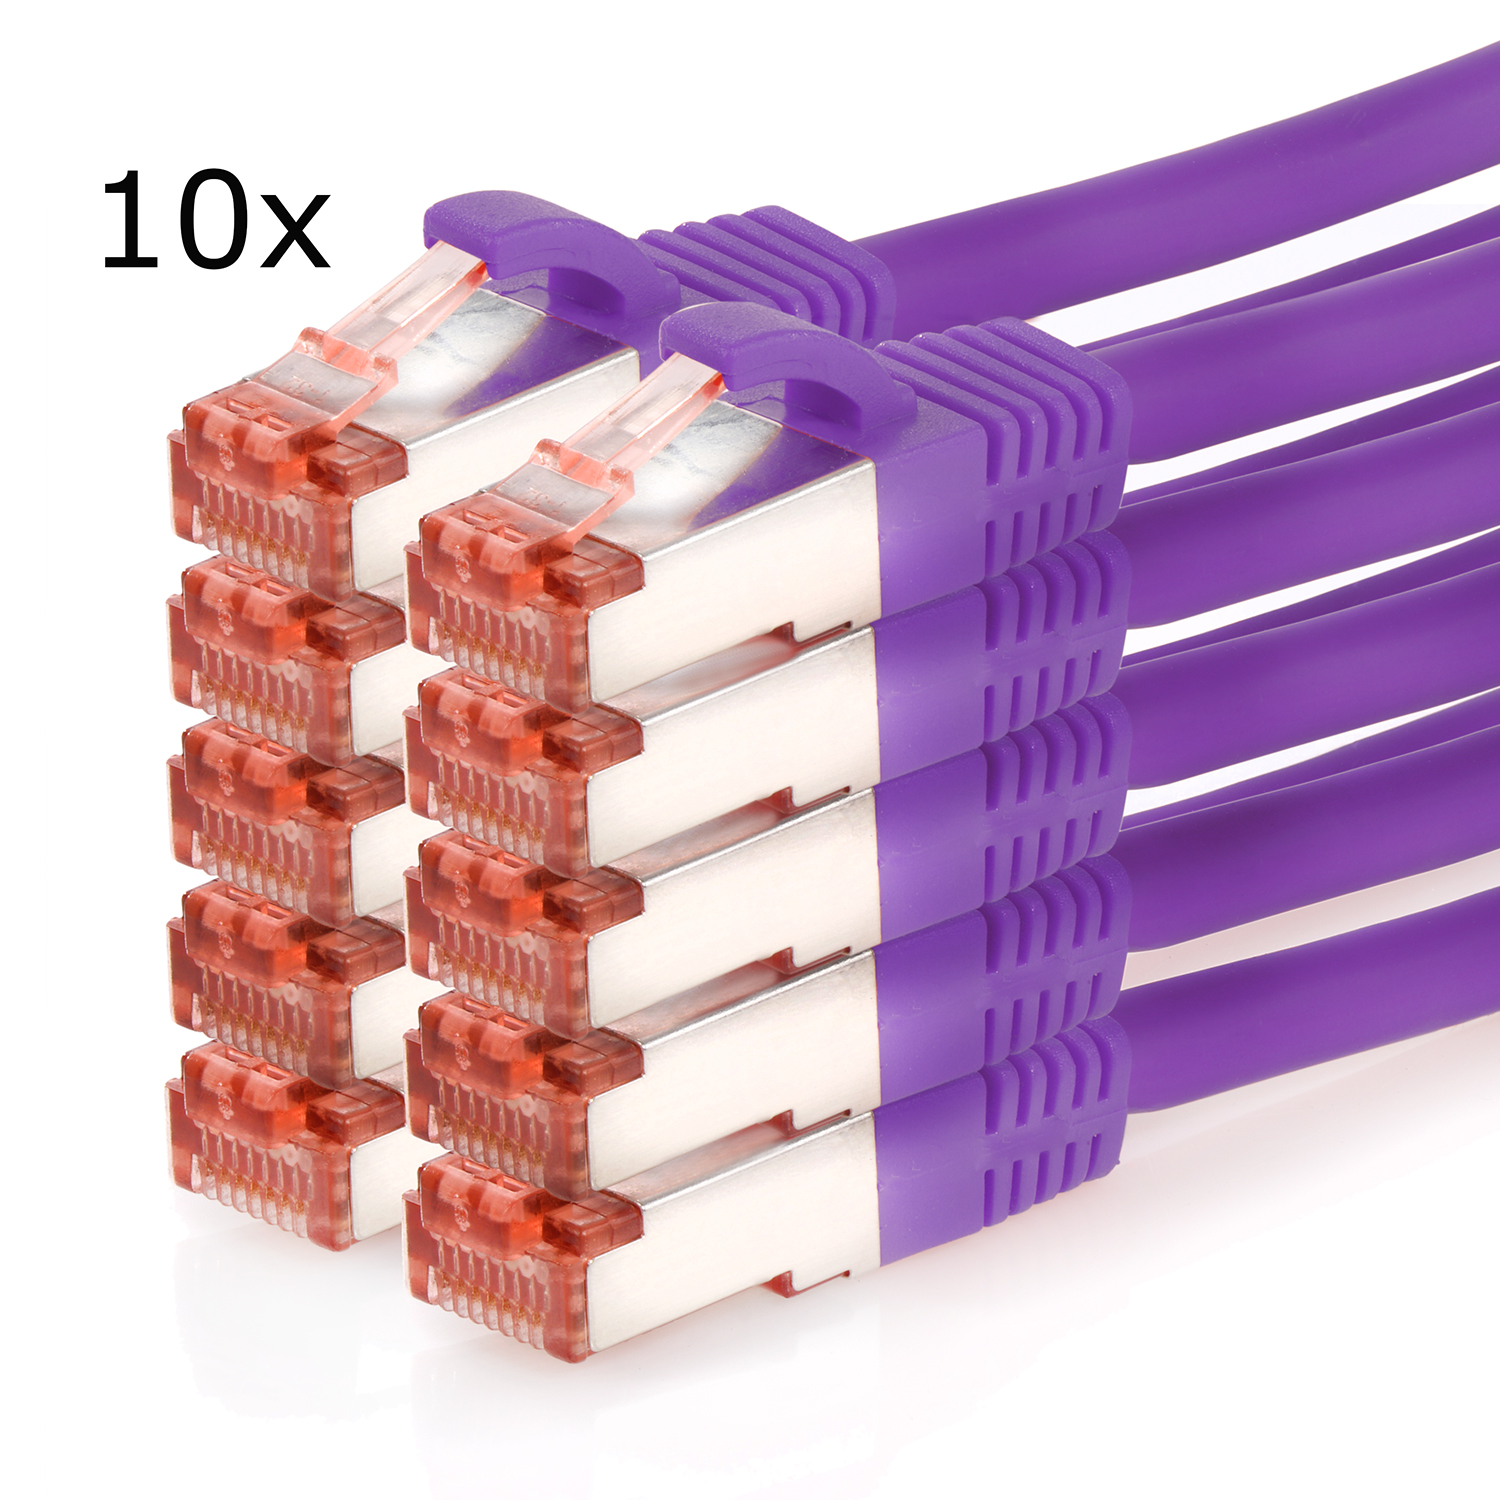 Pack 1000Mbit, / 0,25 Patchkabel 0,25m S/FTP Netzwerkkabel, violett, m Netzwerkkabel TPFNET 10er